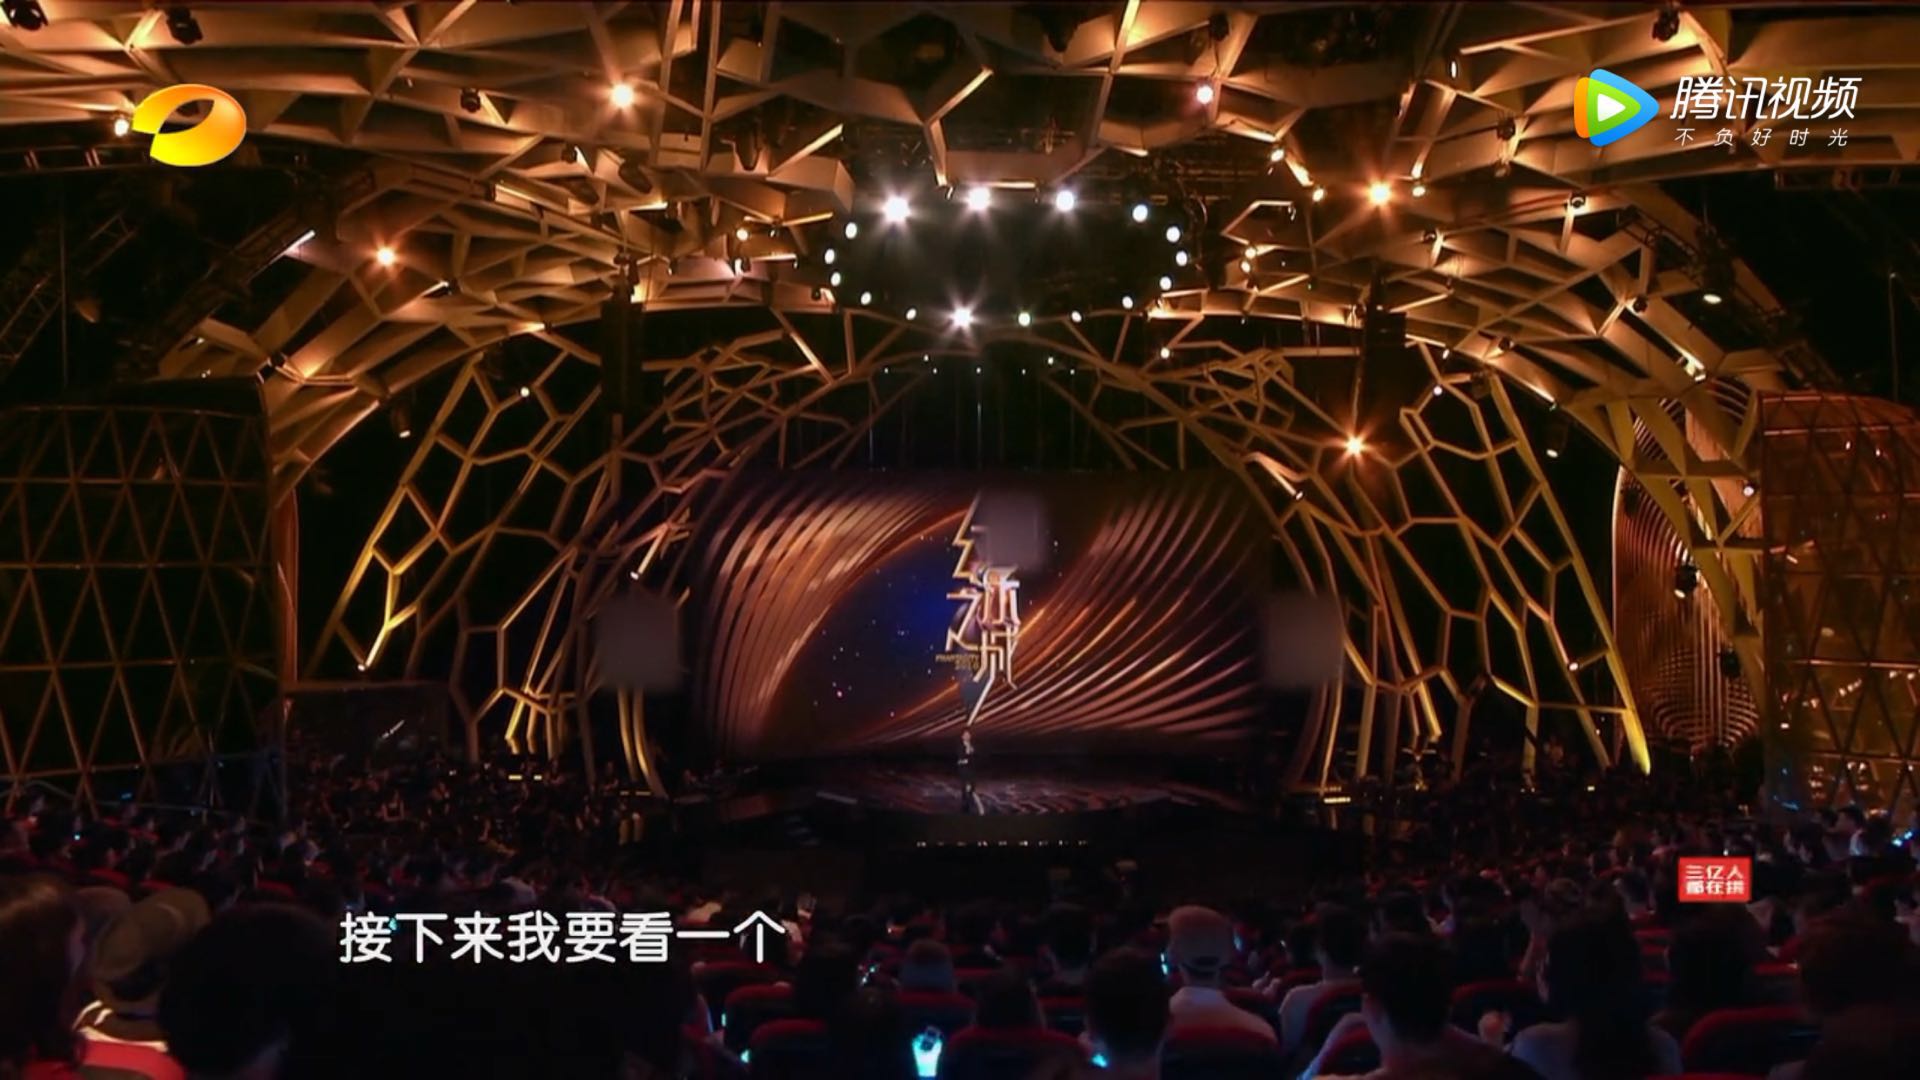 三个维度审视《幻乐之城》,为什么说它是"中国电视新物种"